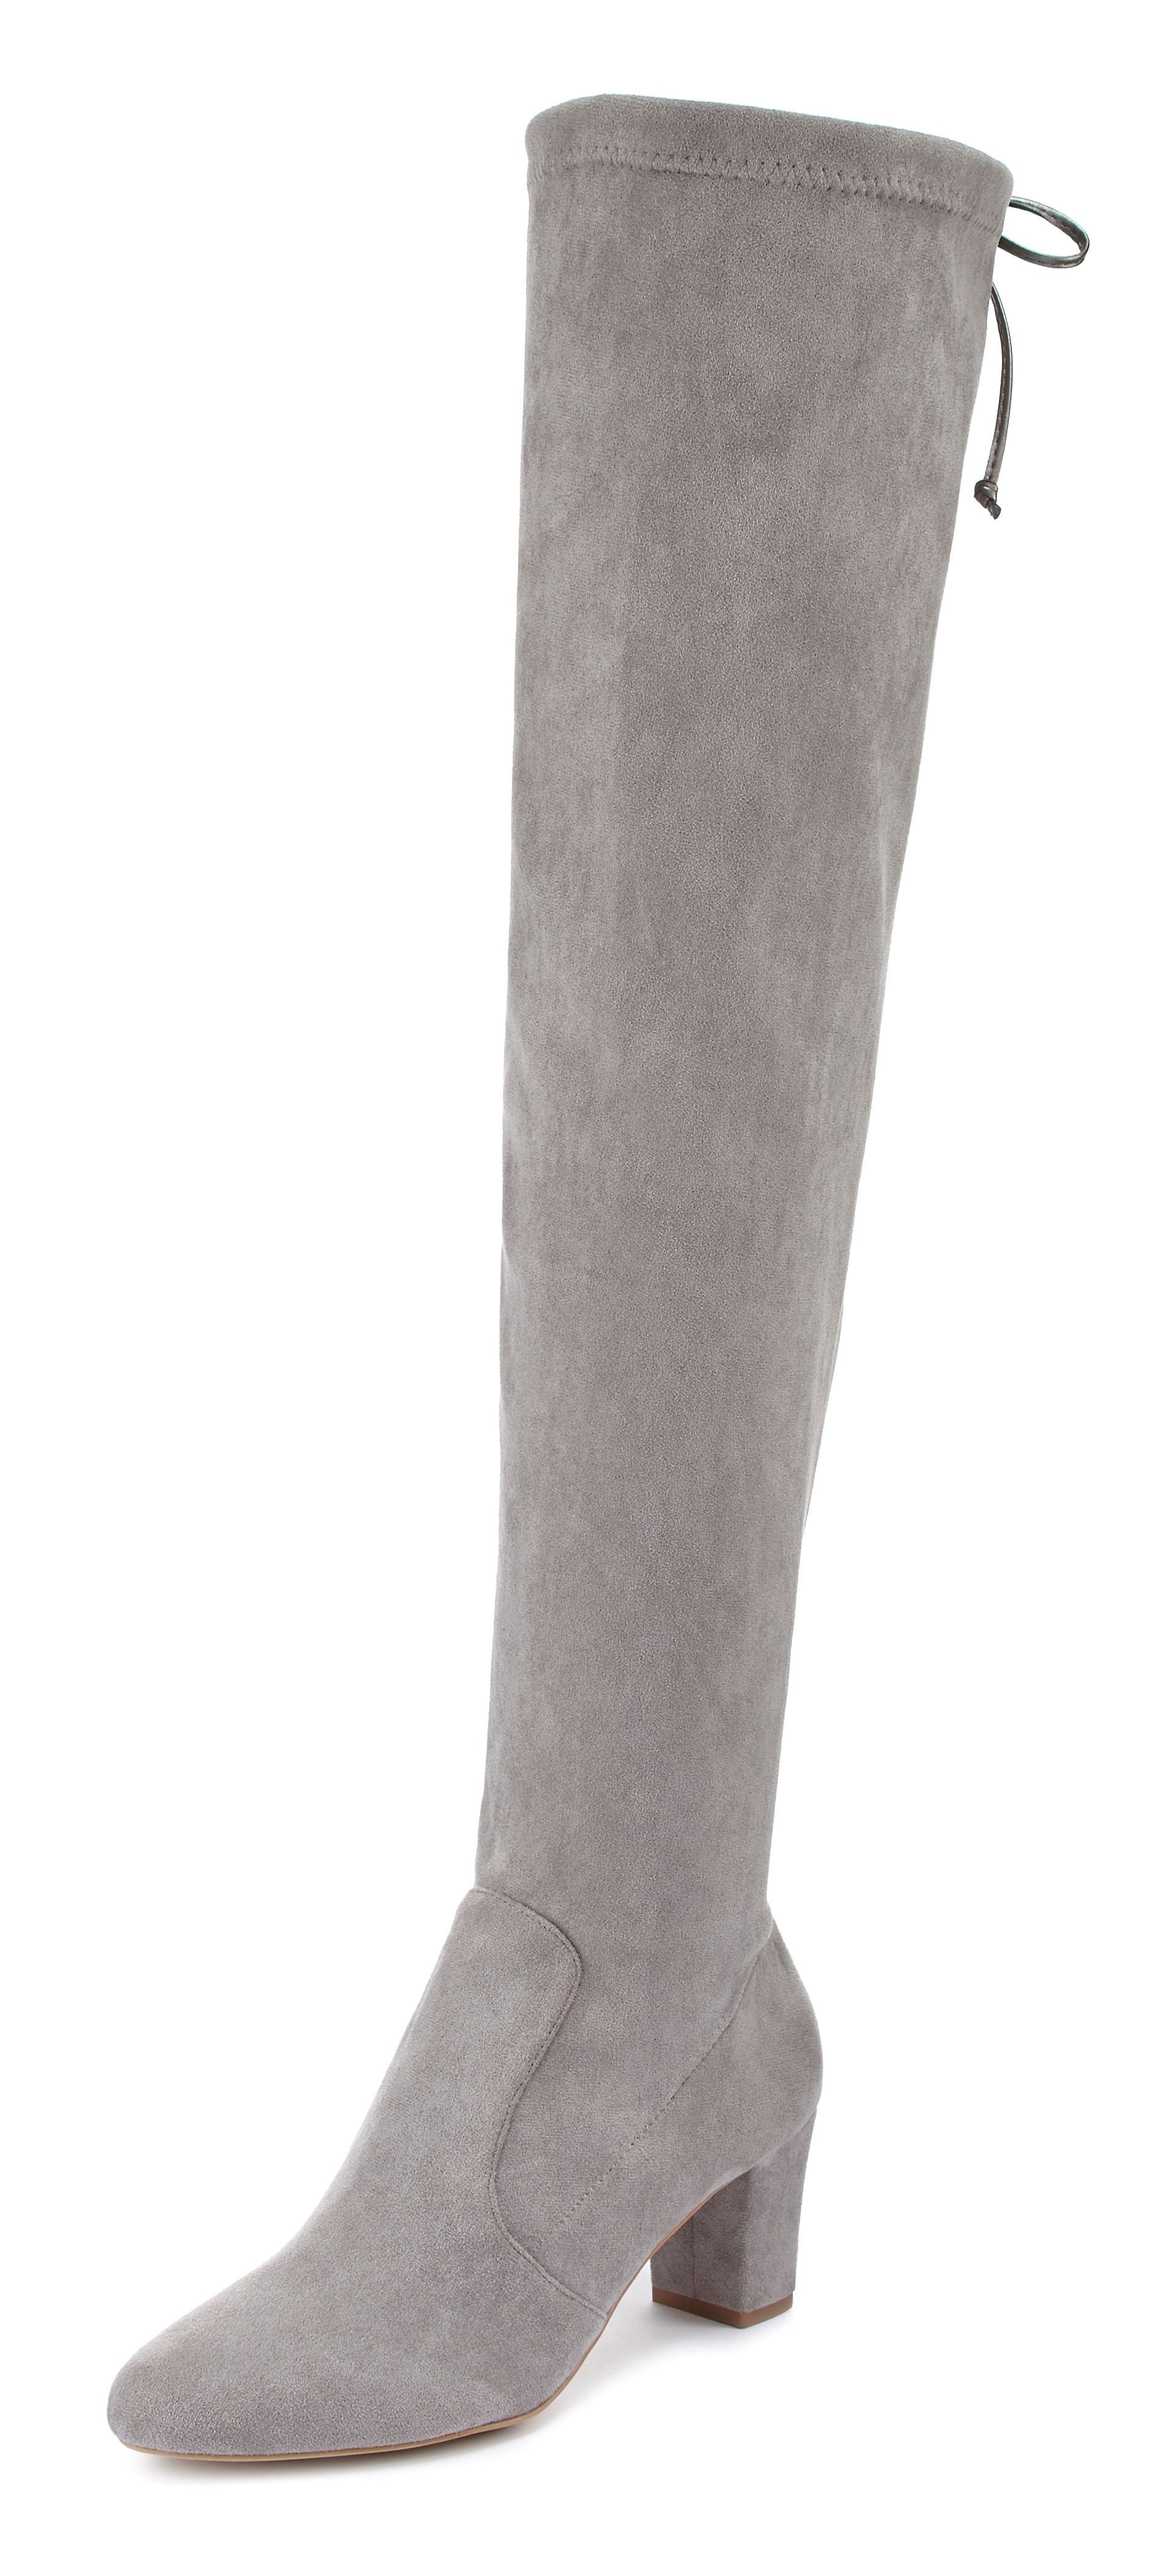 lascana -  Overkneestiefel, aus weichem Stretchmaterial und bequemem Blockabsatz VEGAN